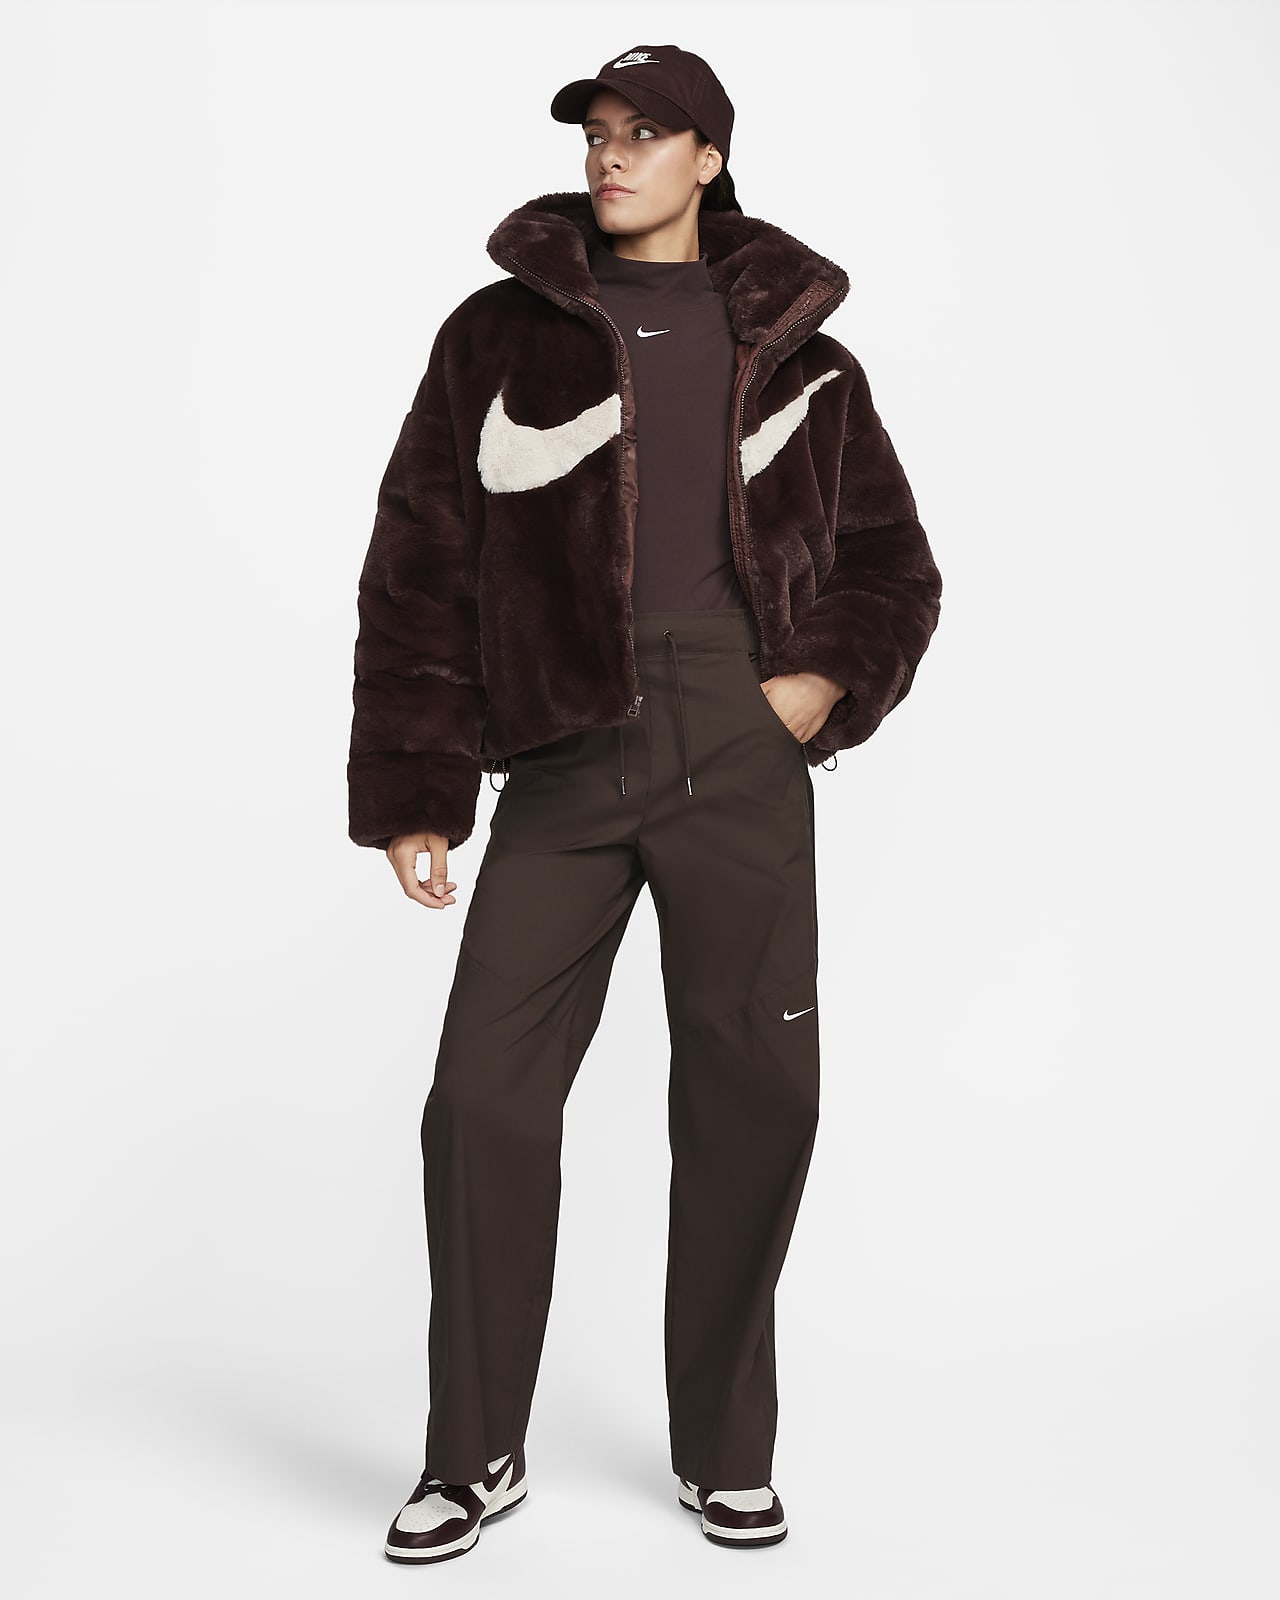 Nike WMNS Plush Faux Fur Long Jacket Black